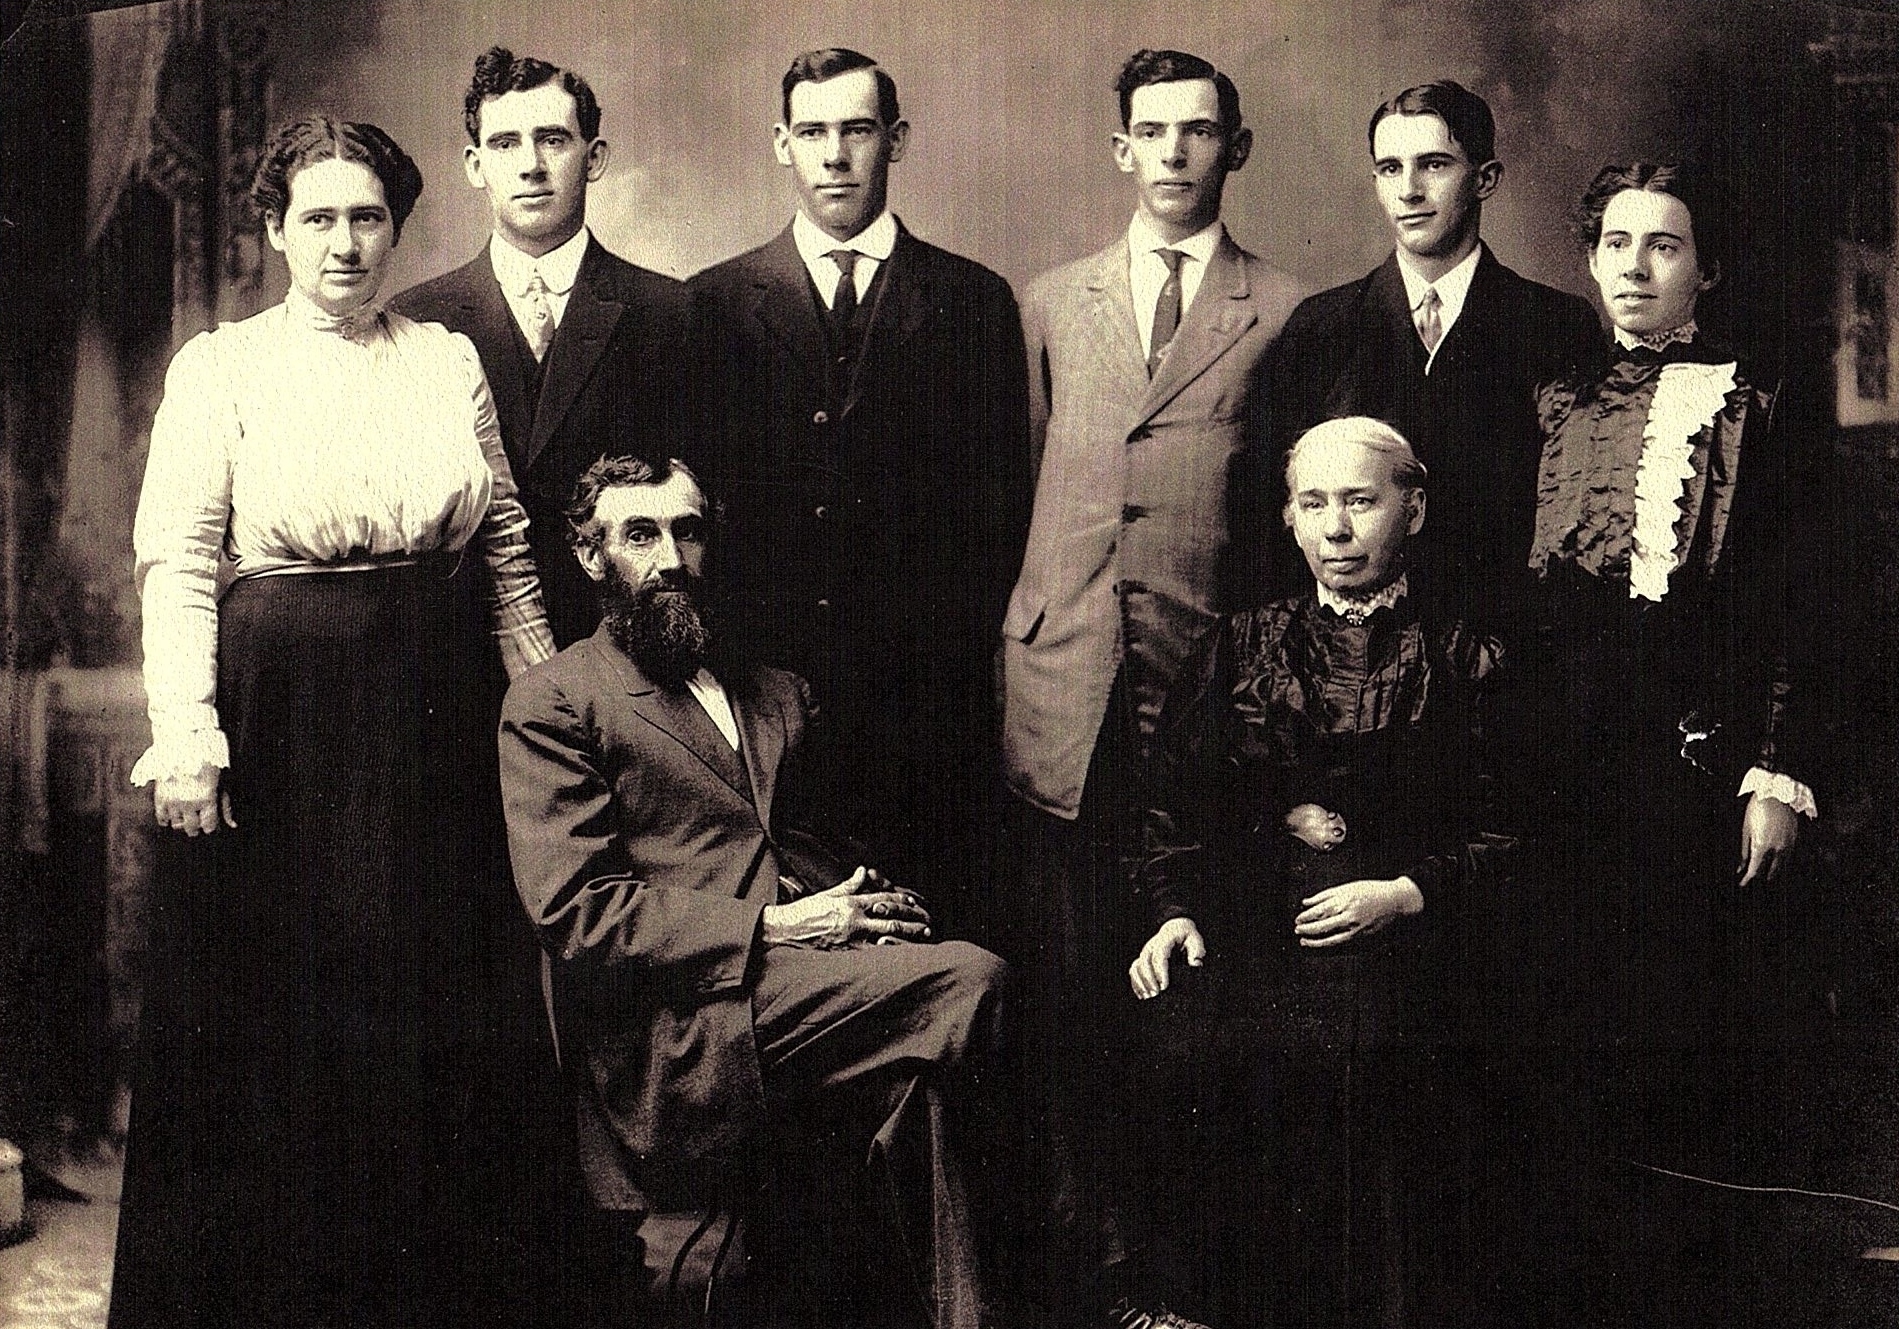 The Emanuel Ulmer Family, 1912